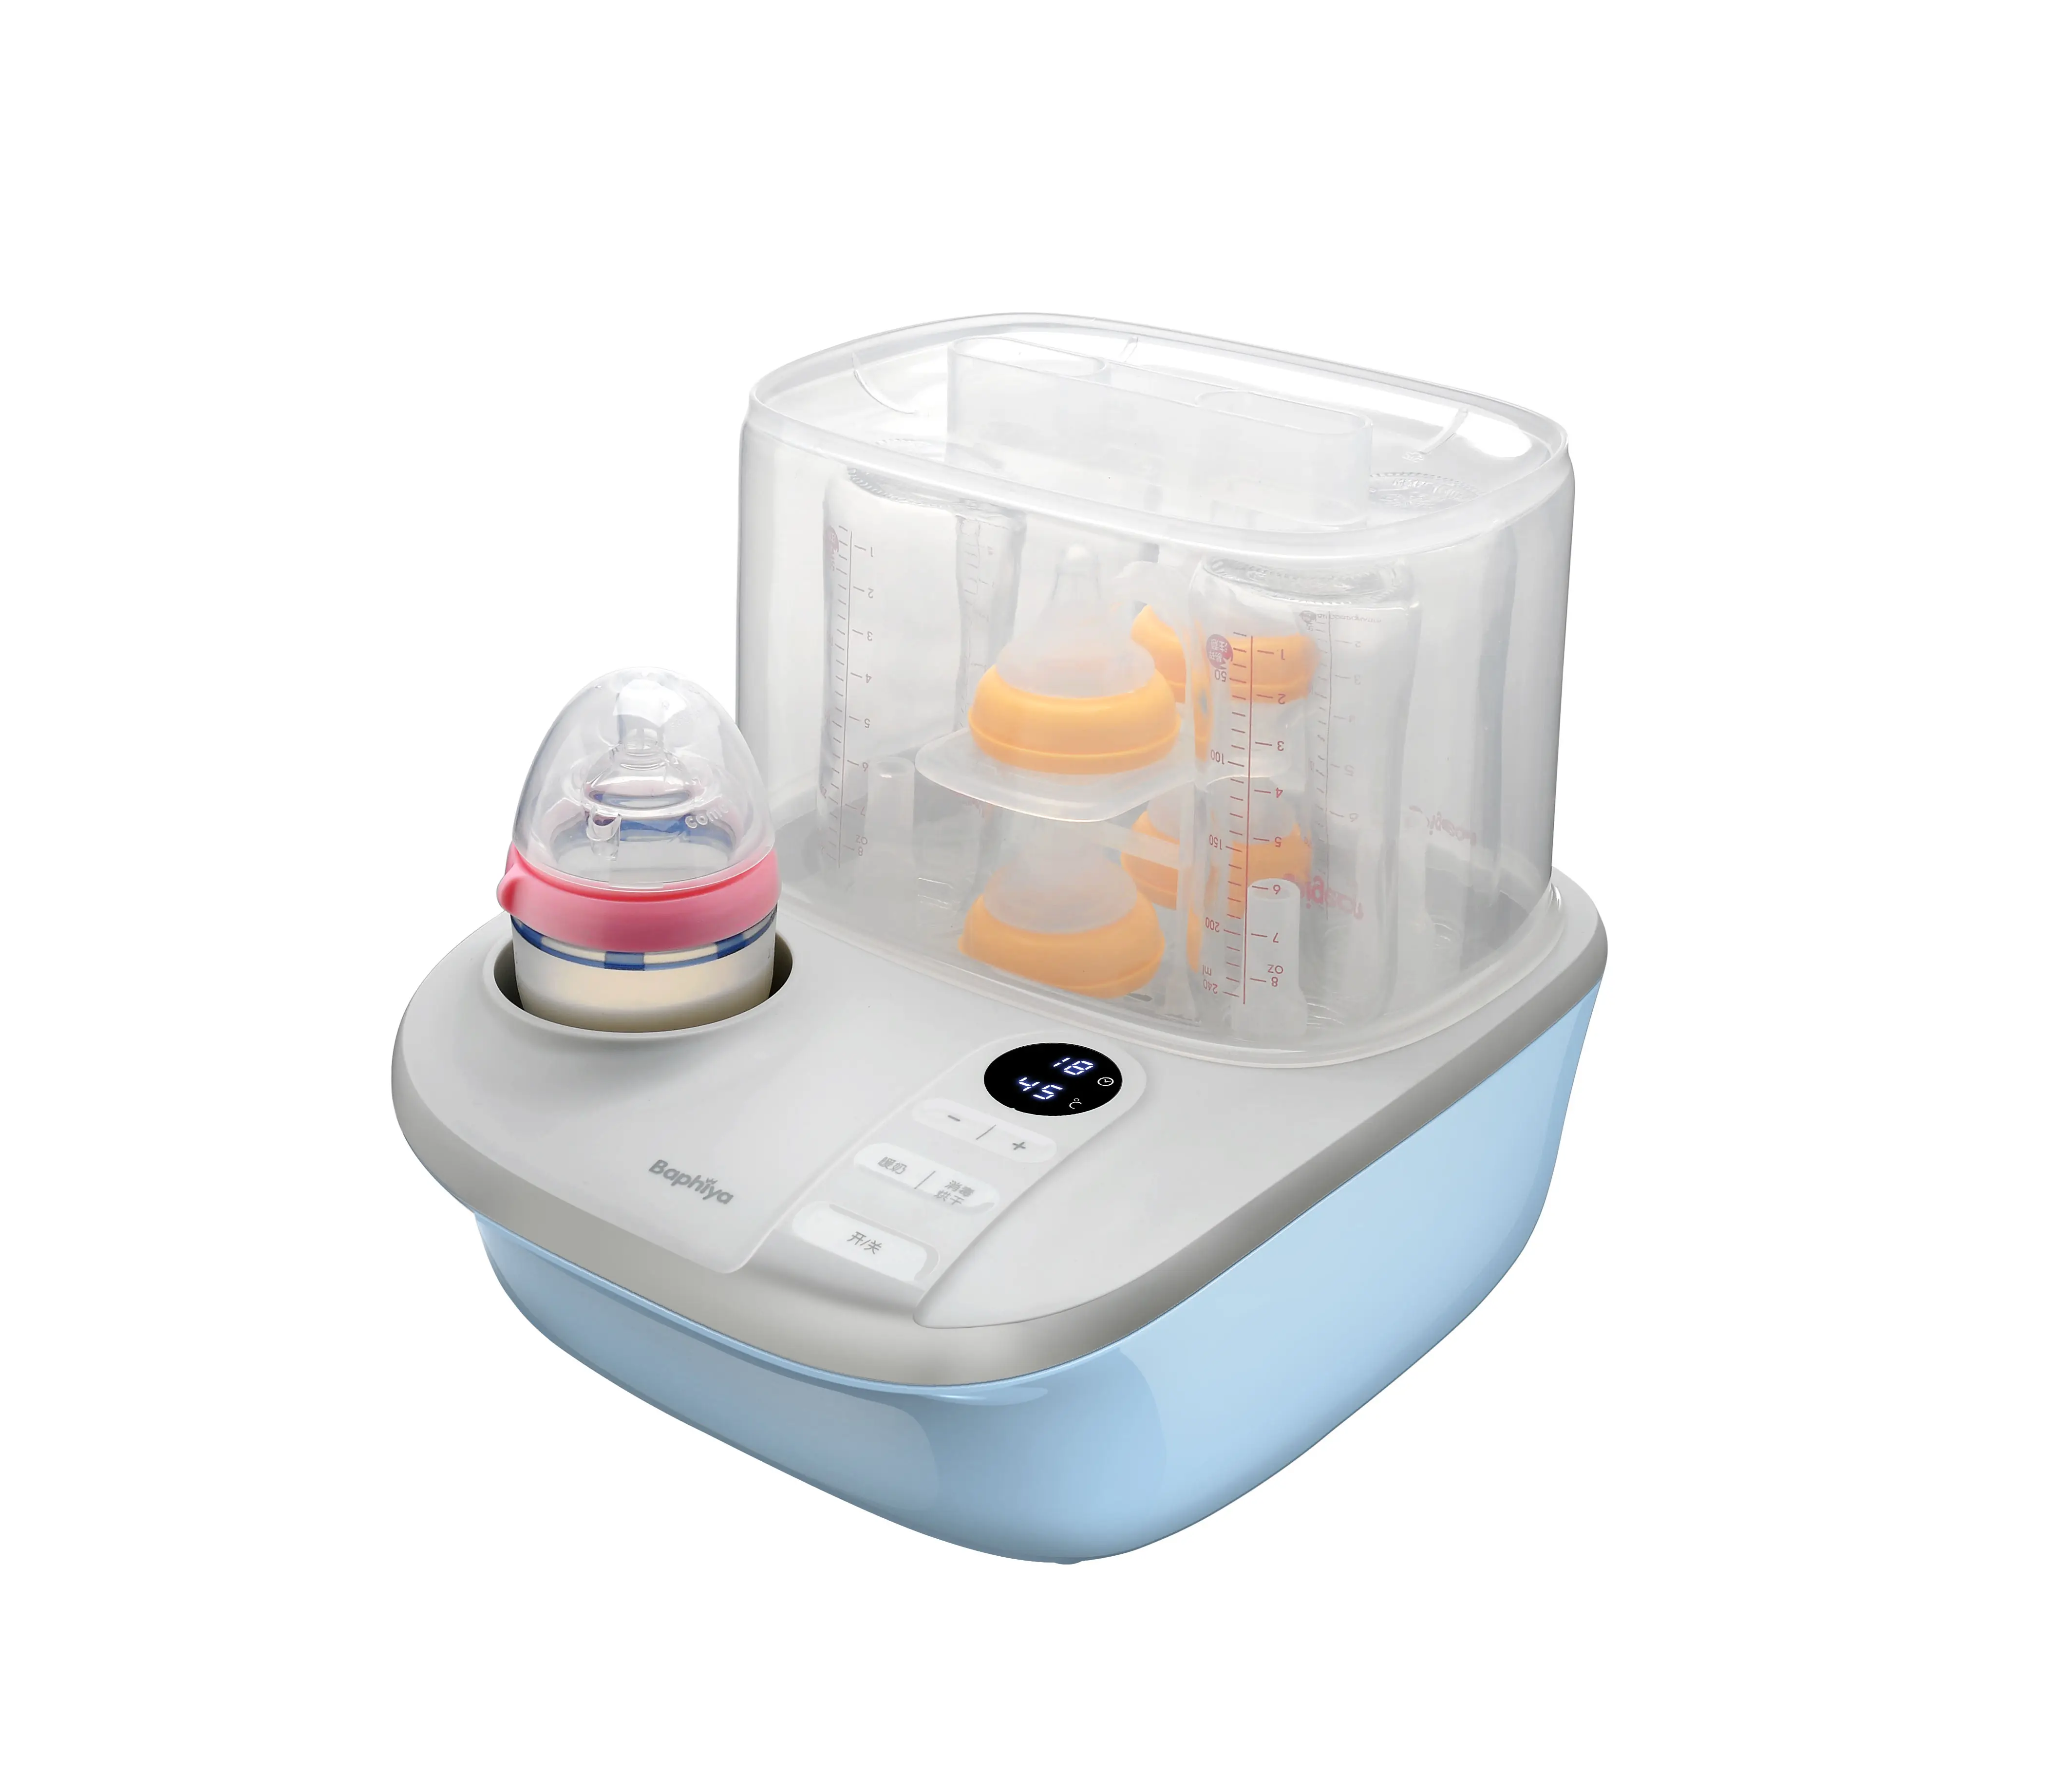 Séchoir — stérilisateur de biberons multifonctions, avec affichage numérique et panneau tactile LCD, réchauffeur de lait pour bébé installé pour services service OEM ODM, ml